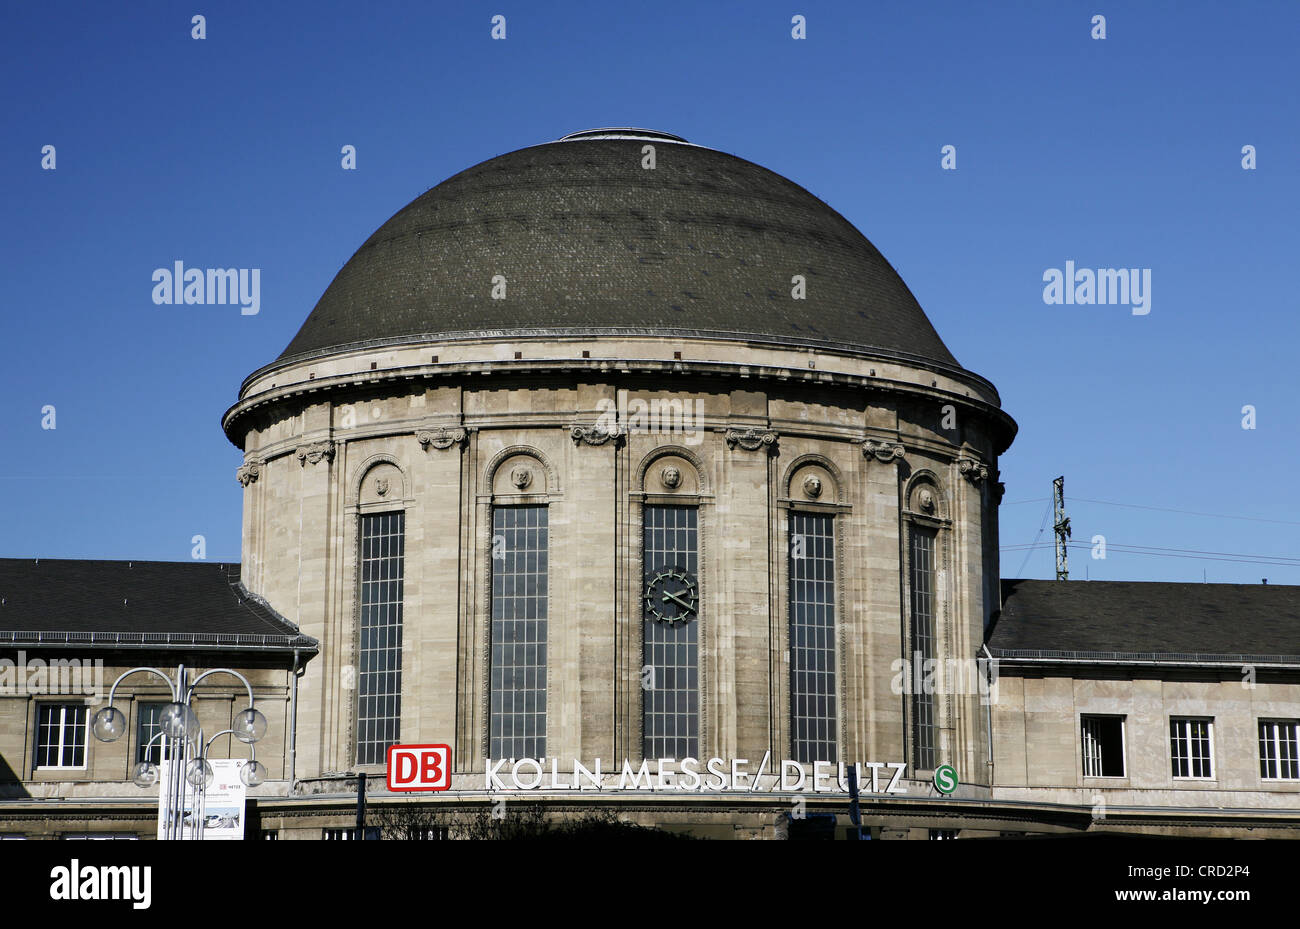 Historische Kuppelbau, Deutz Bahnhof Köln - Deutz, Köln, Nordrhein - Westfalen, Deutschland, Europa Stockfoto